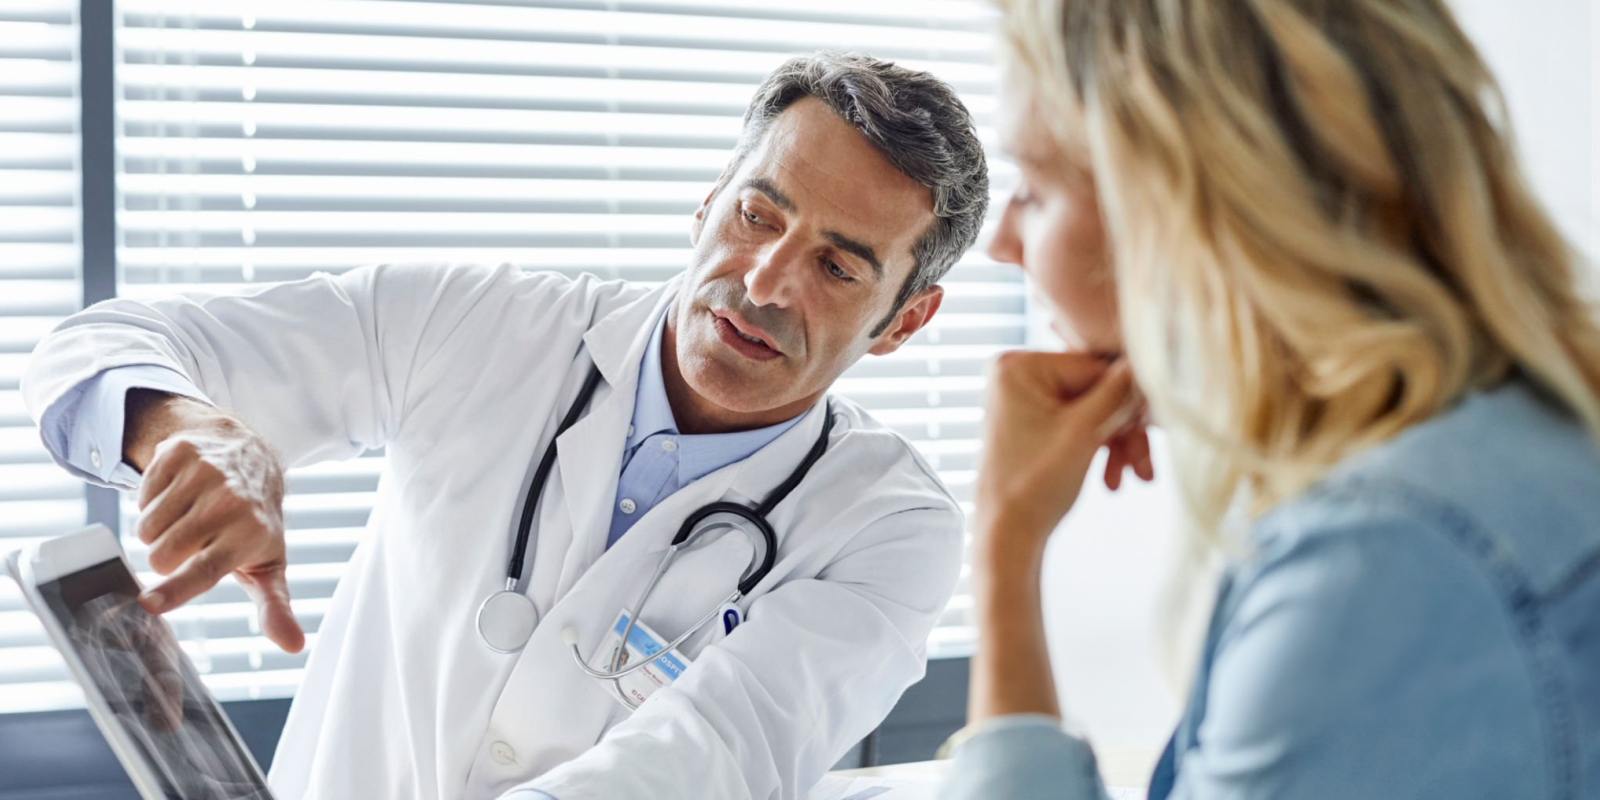 Atenção Básica de Saúde: Qual o Papel do Médico?